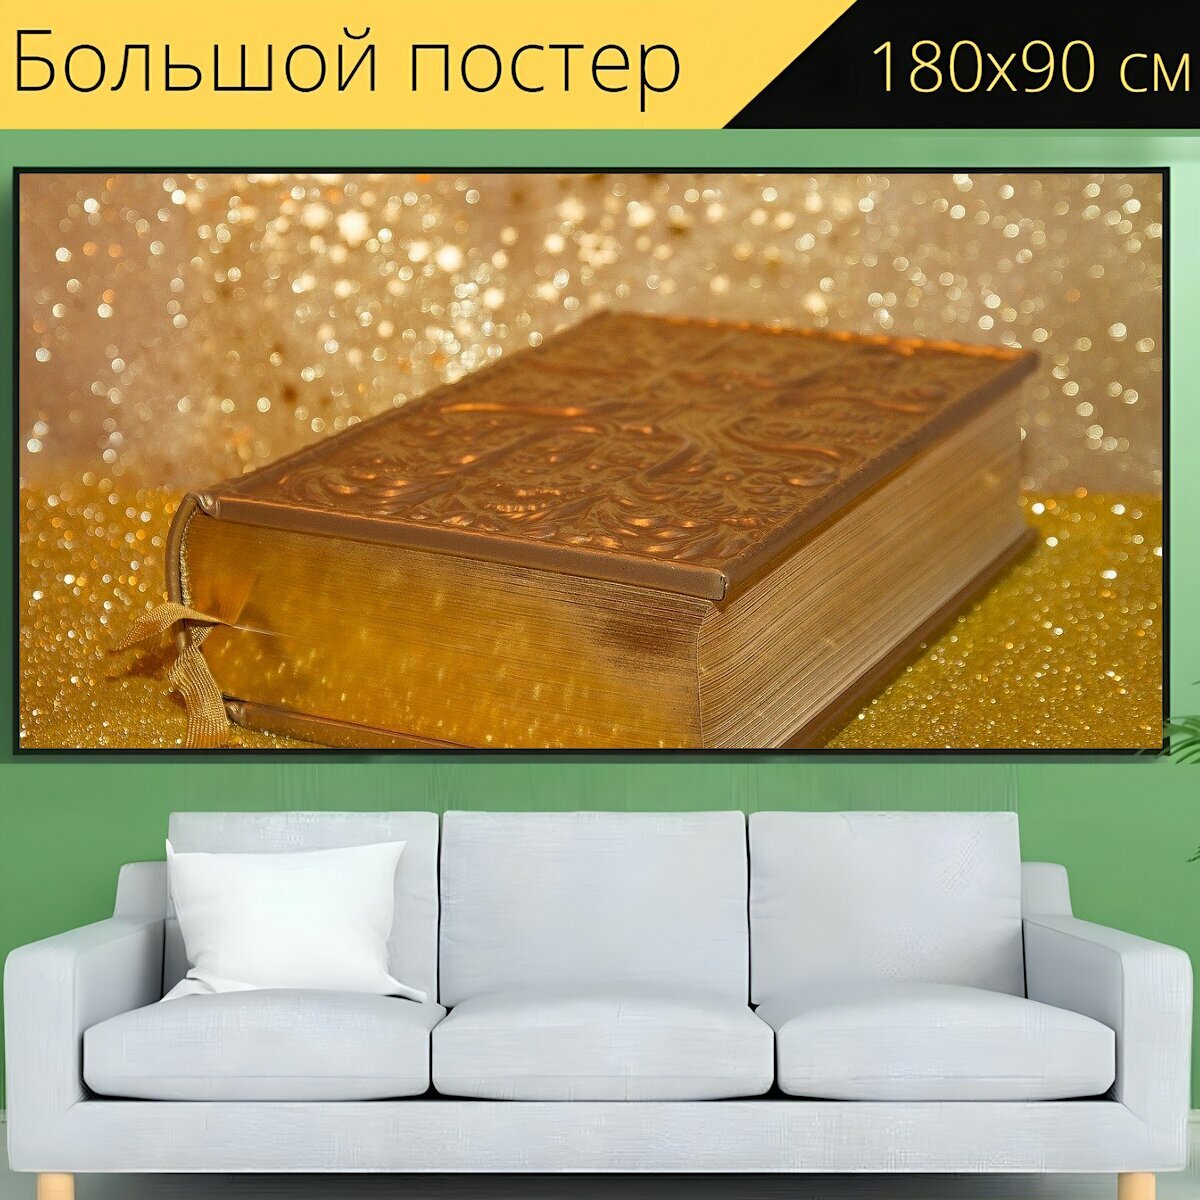 Большой постер "Книга, библия, религиозный" 180 x 90 см. для интерьера